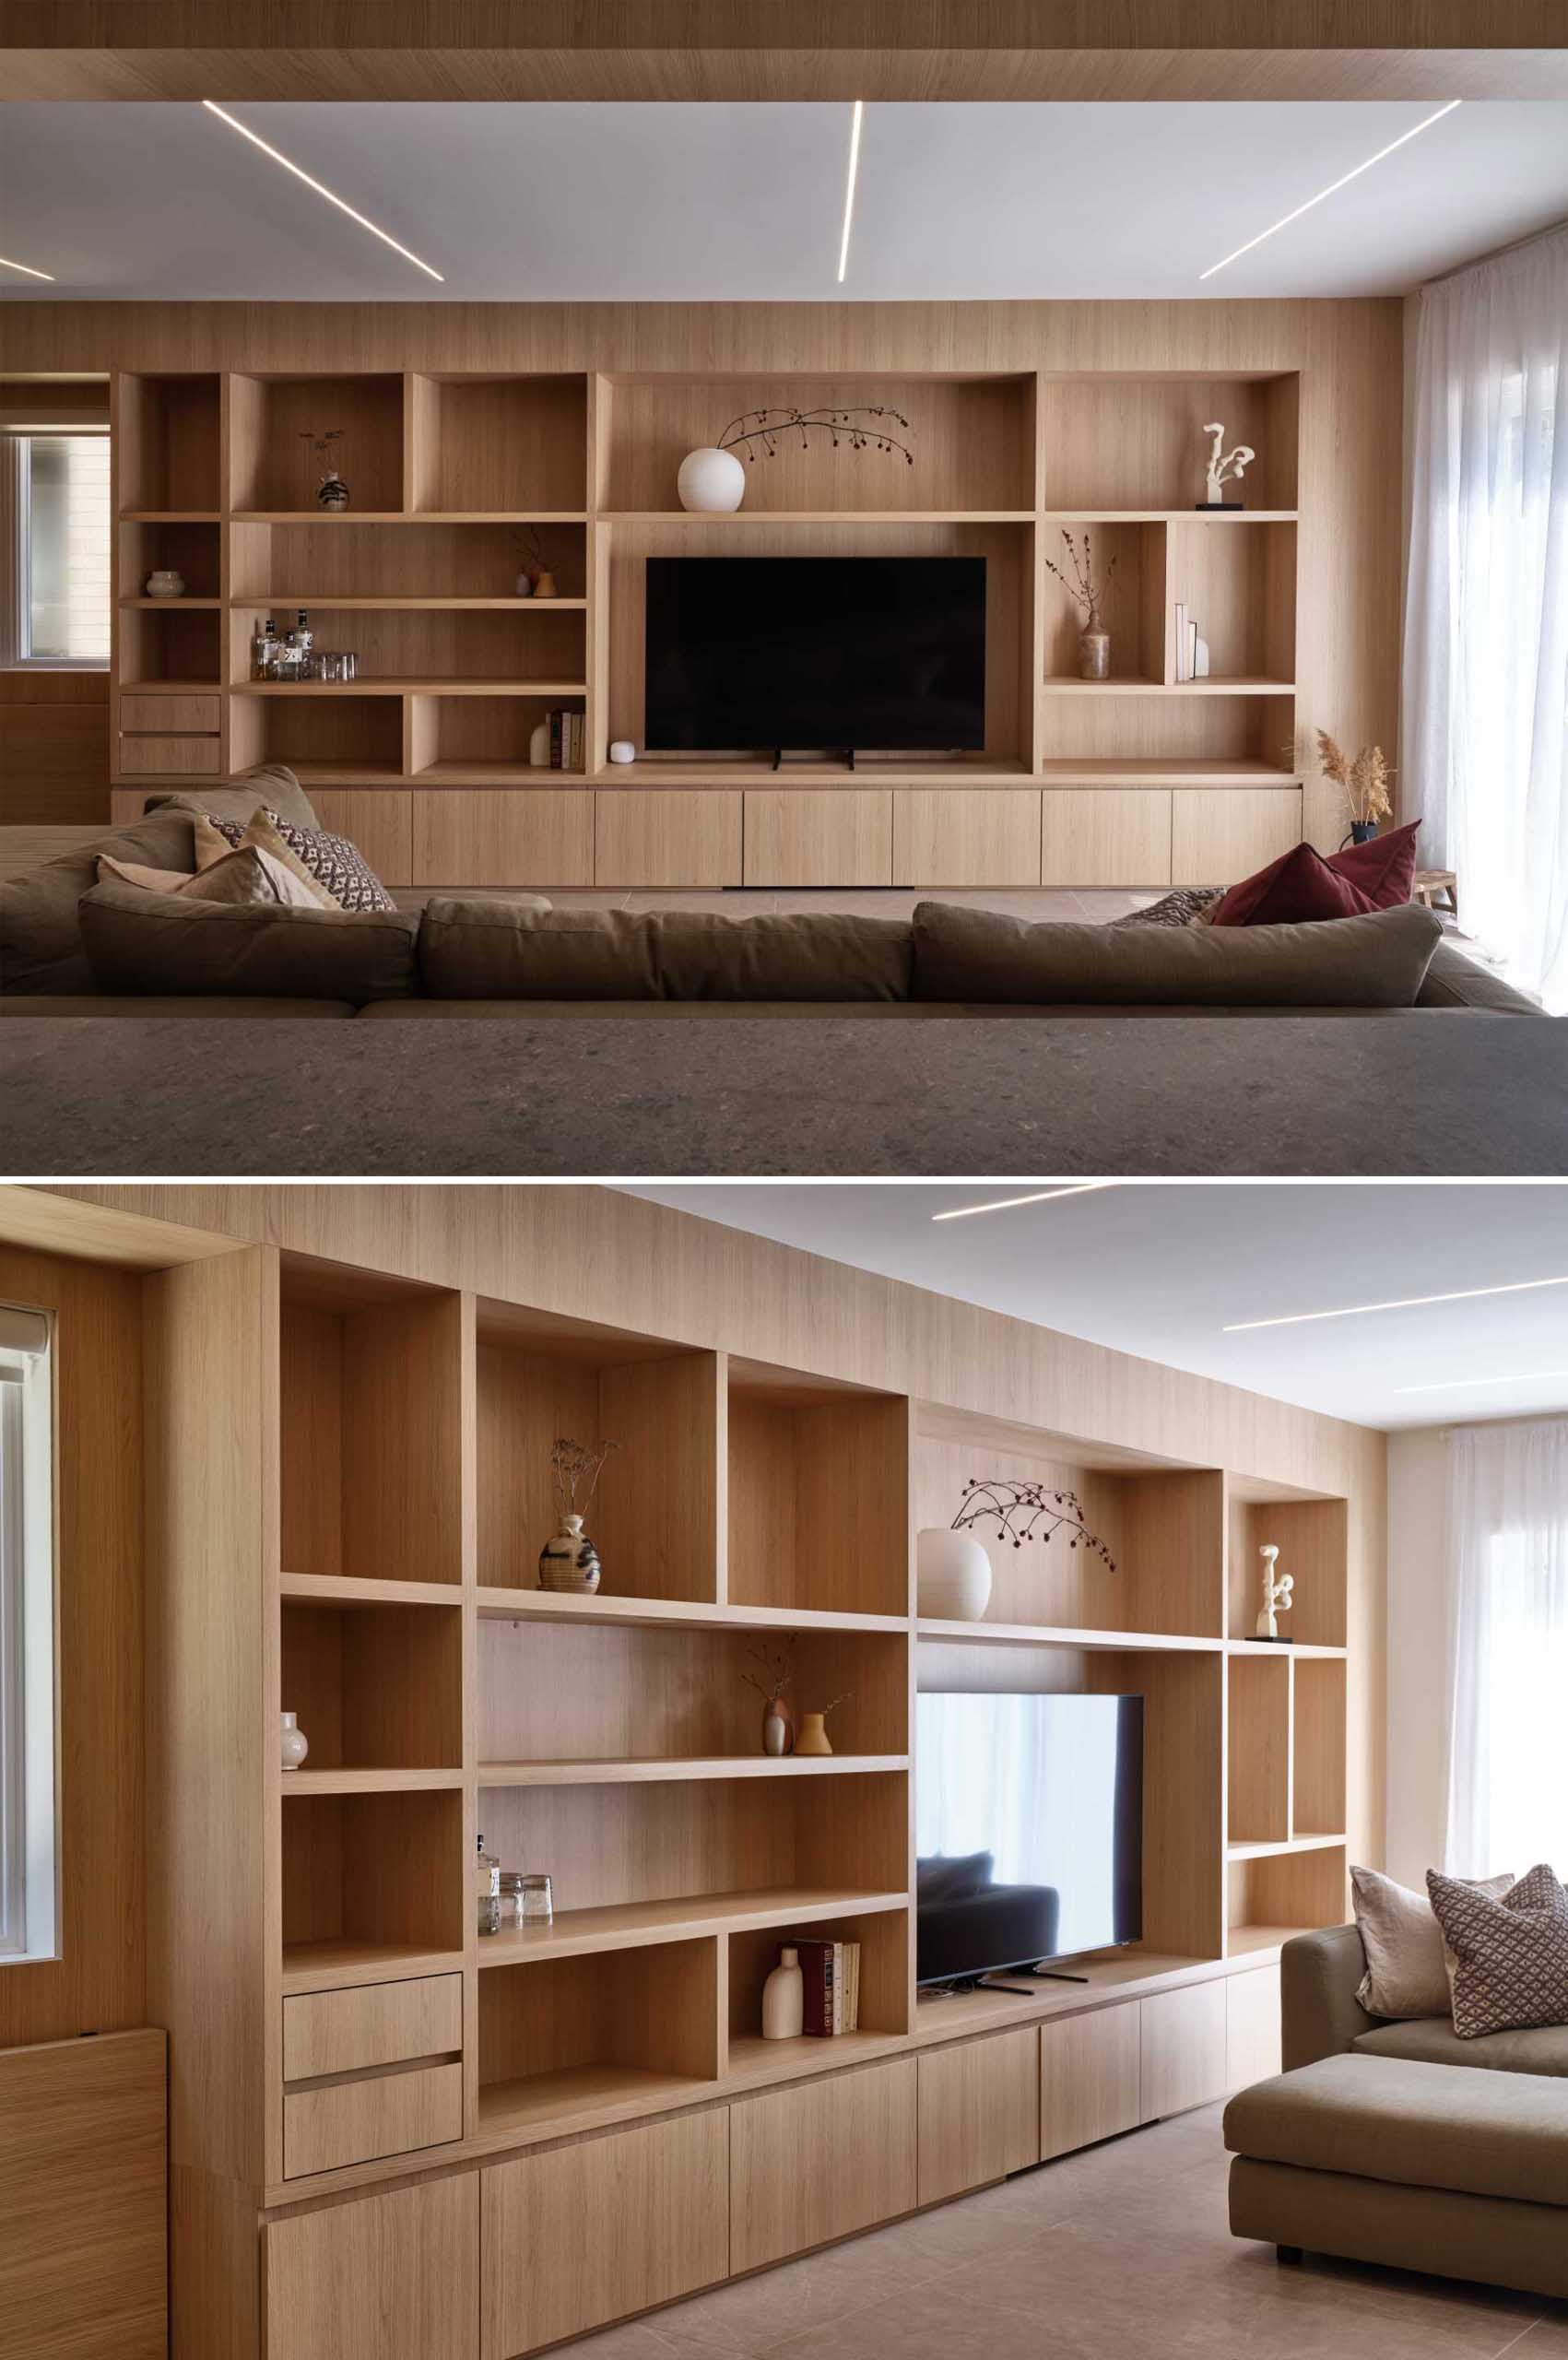 اتاق نشیمن و فضای کار با آسیاب های چوبی طراحی شده اند که دور تلویزیون را احاطه کرده و فضای ذخیره سازی، نمایشگر و میزهای تاشو را در خود جای داده است.